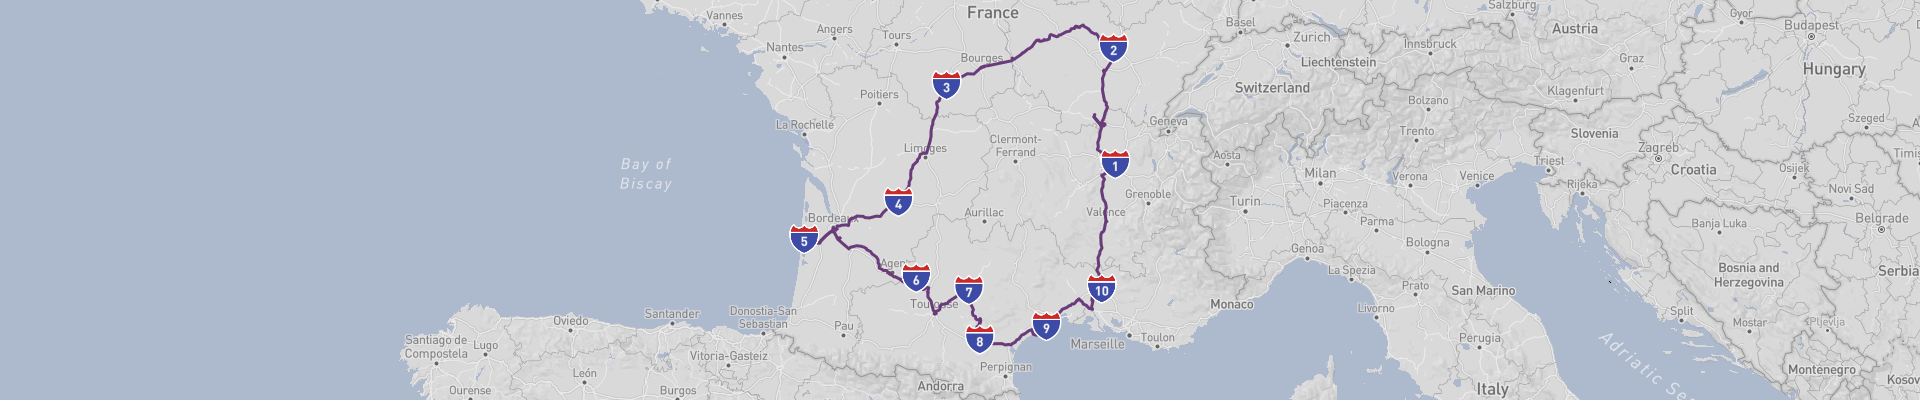 Itinéraire Sud-Ouest de la France 